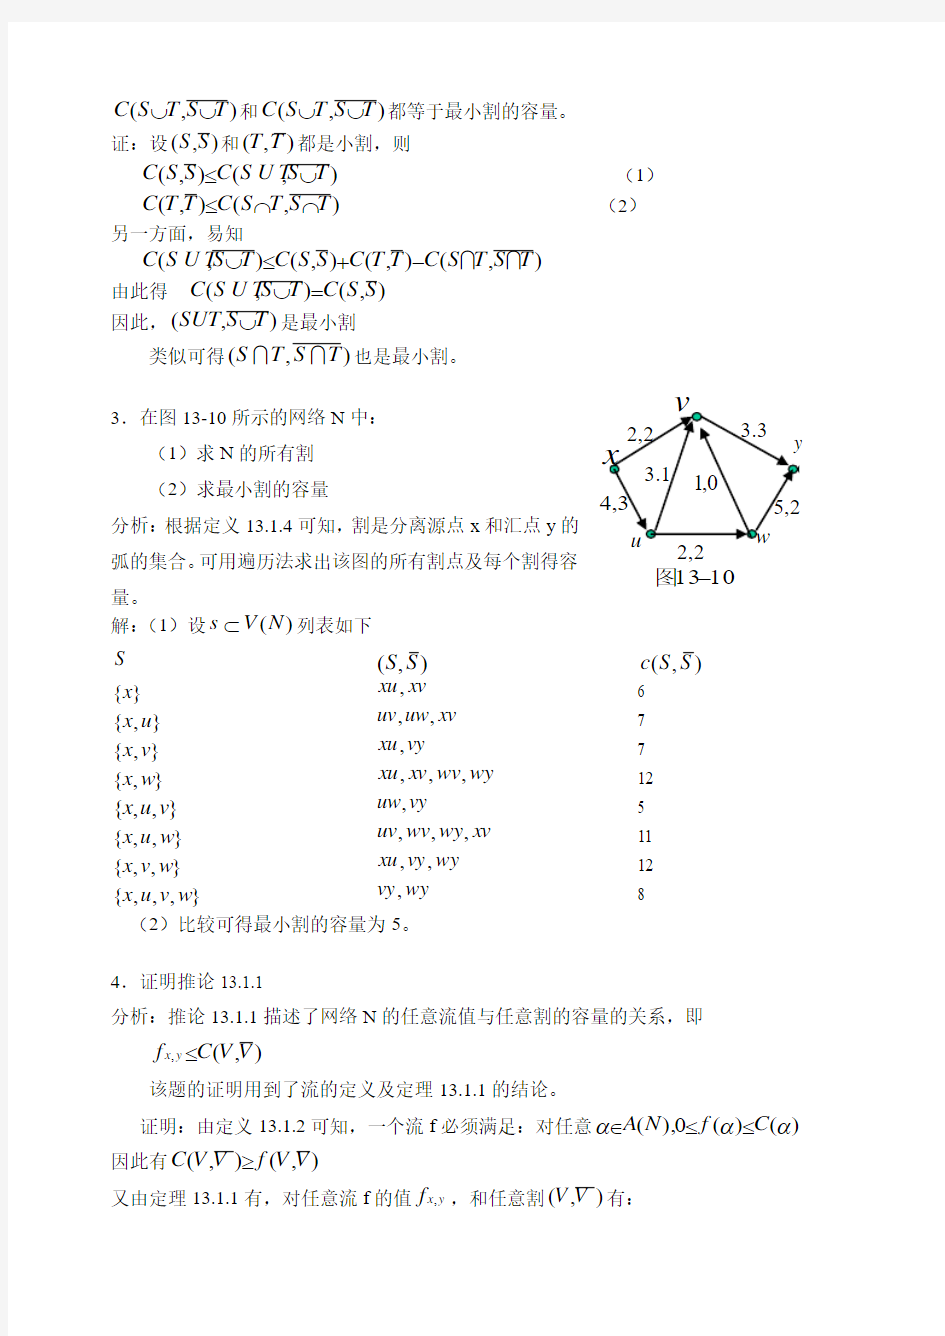 湘潭大学 刘任任版 离散数学课后习题答案 习题13